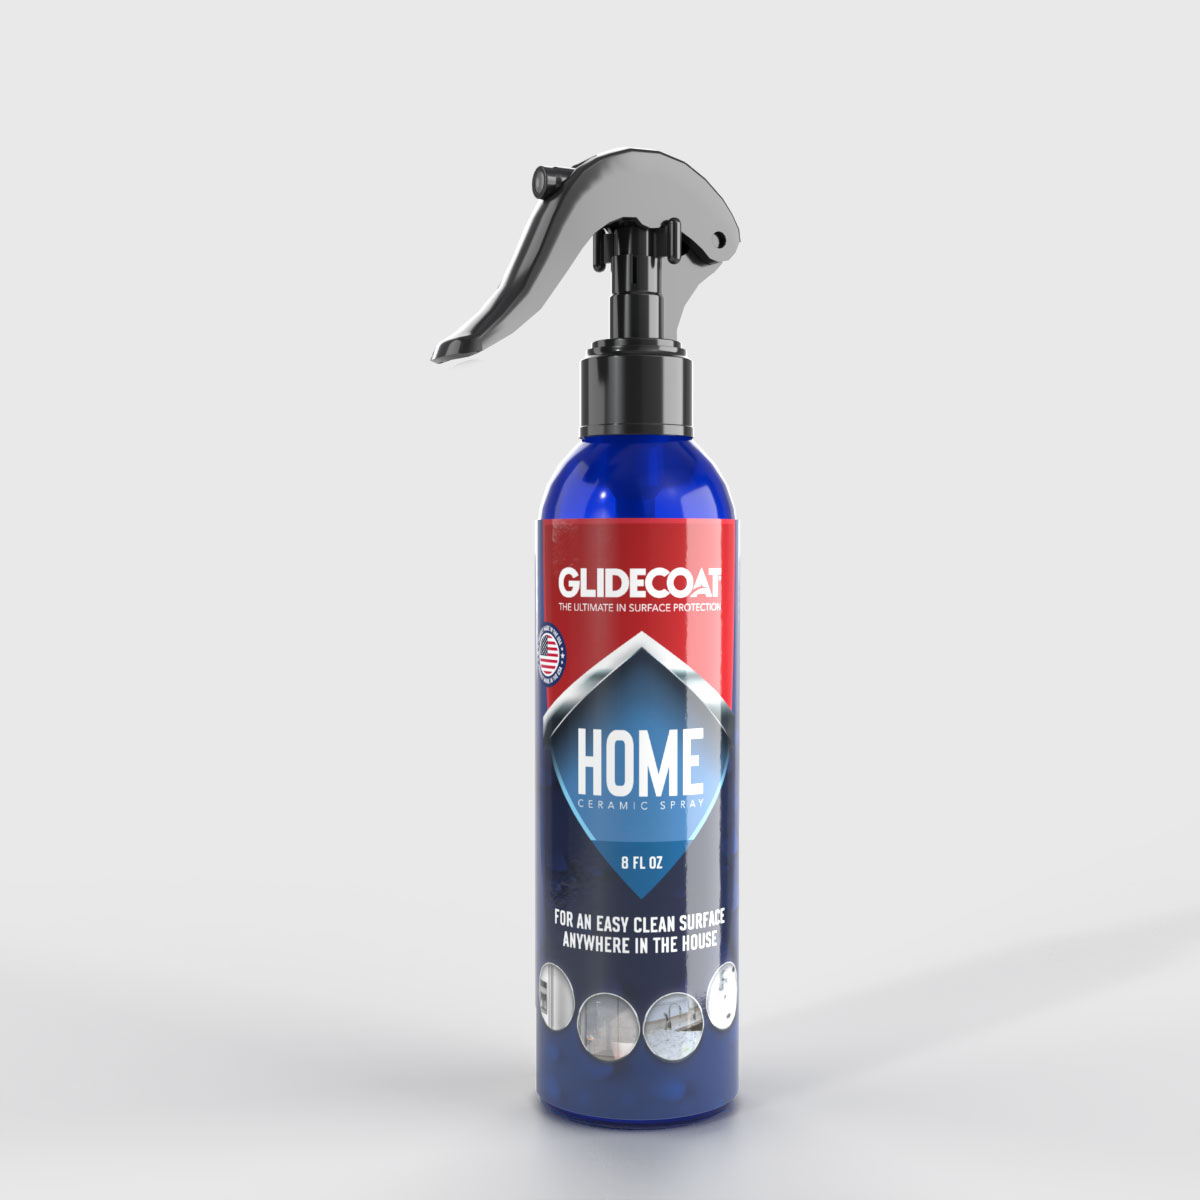 Home Ceramic Spray